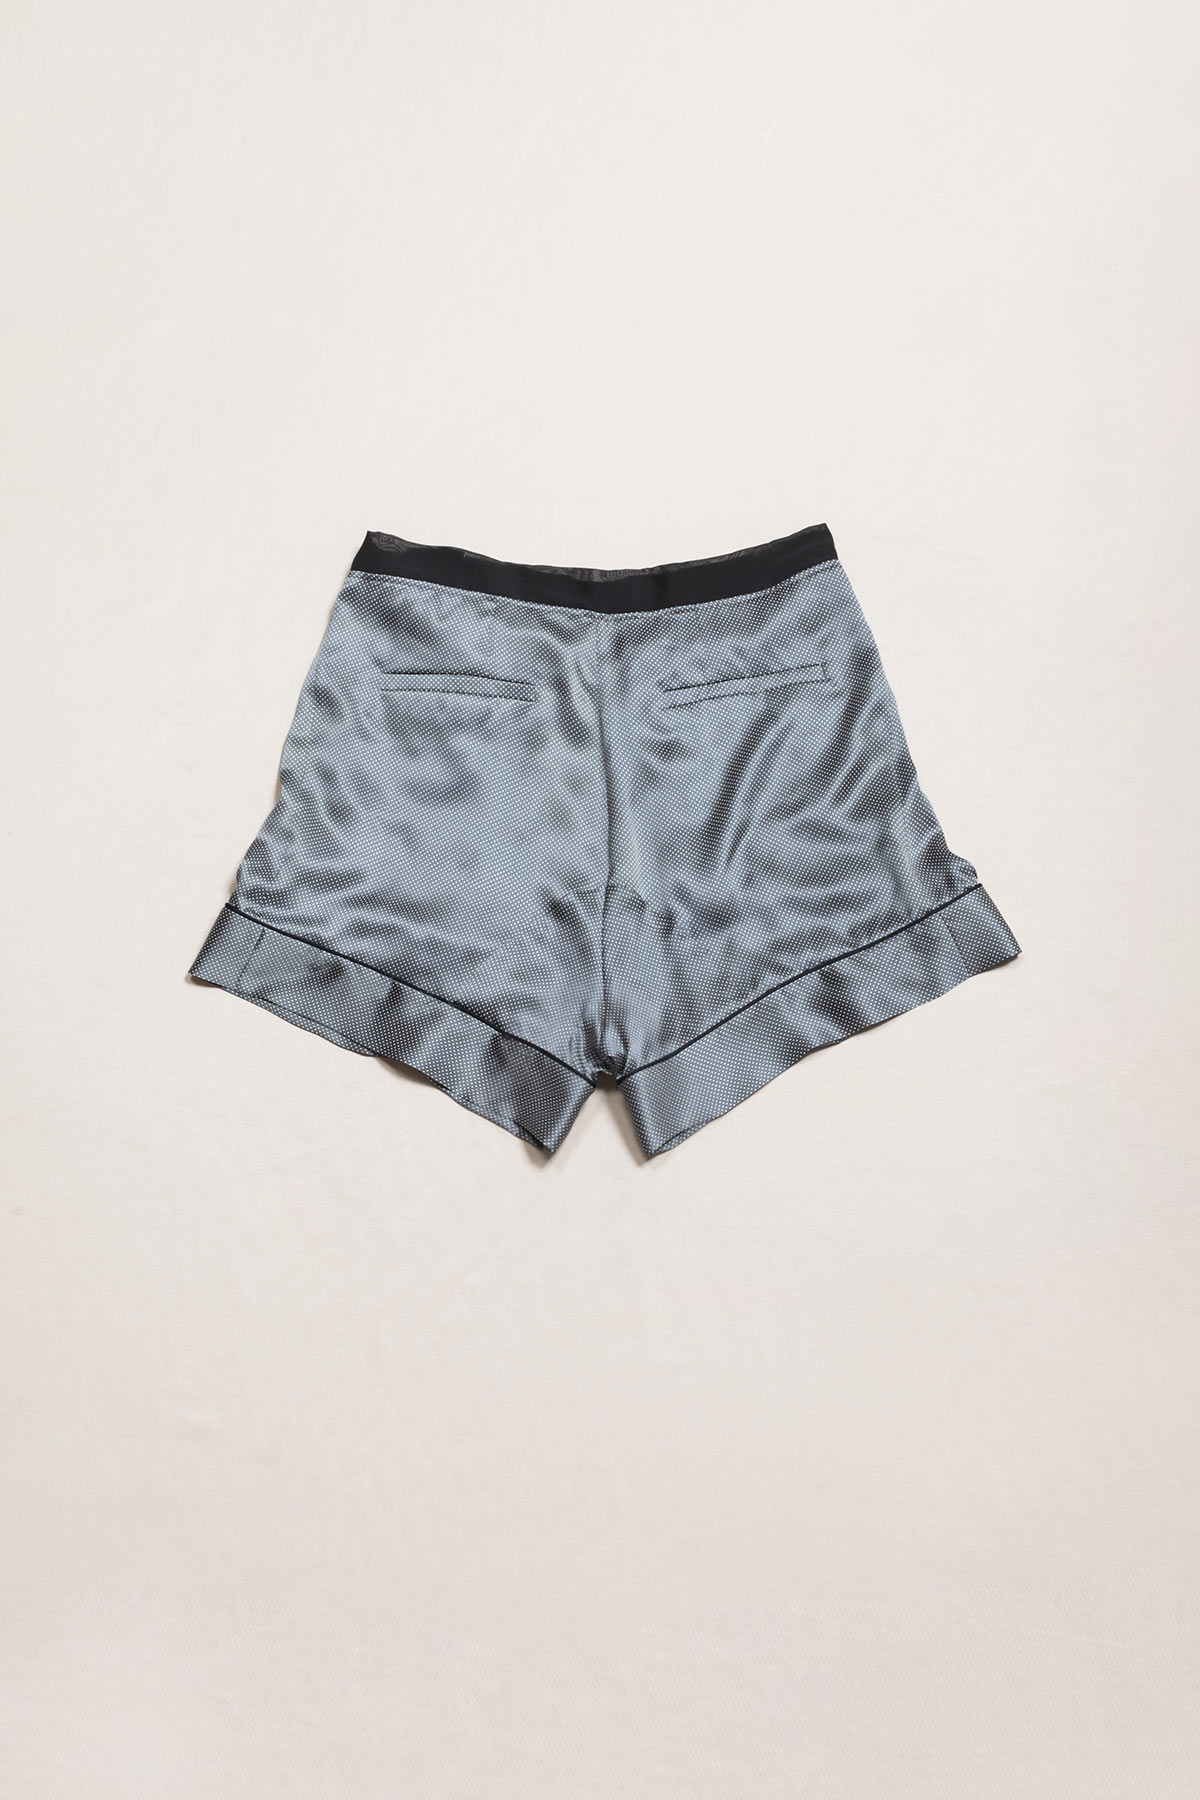 paula-immich-shorts-zum-wickeln-aus-100%-seidensatin